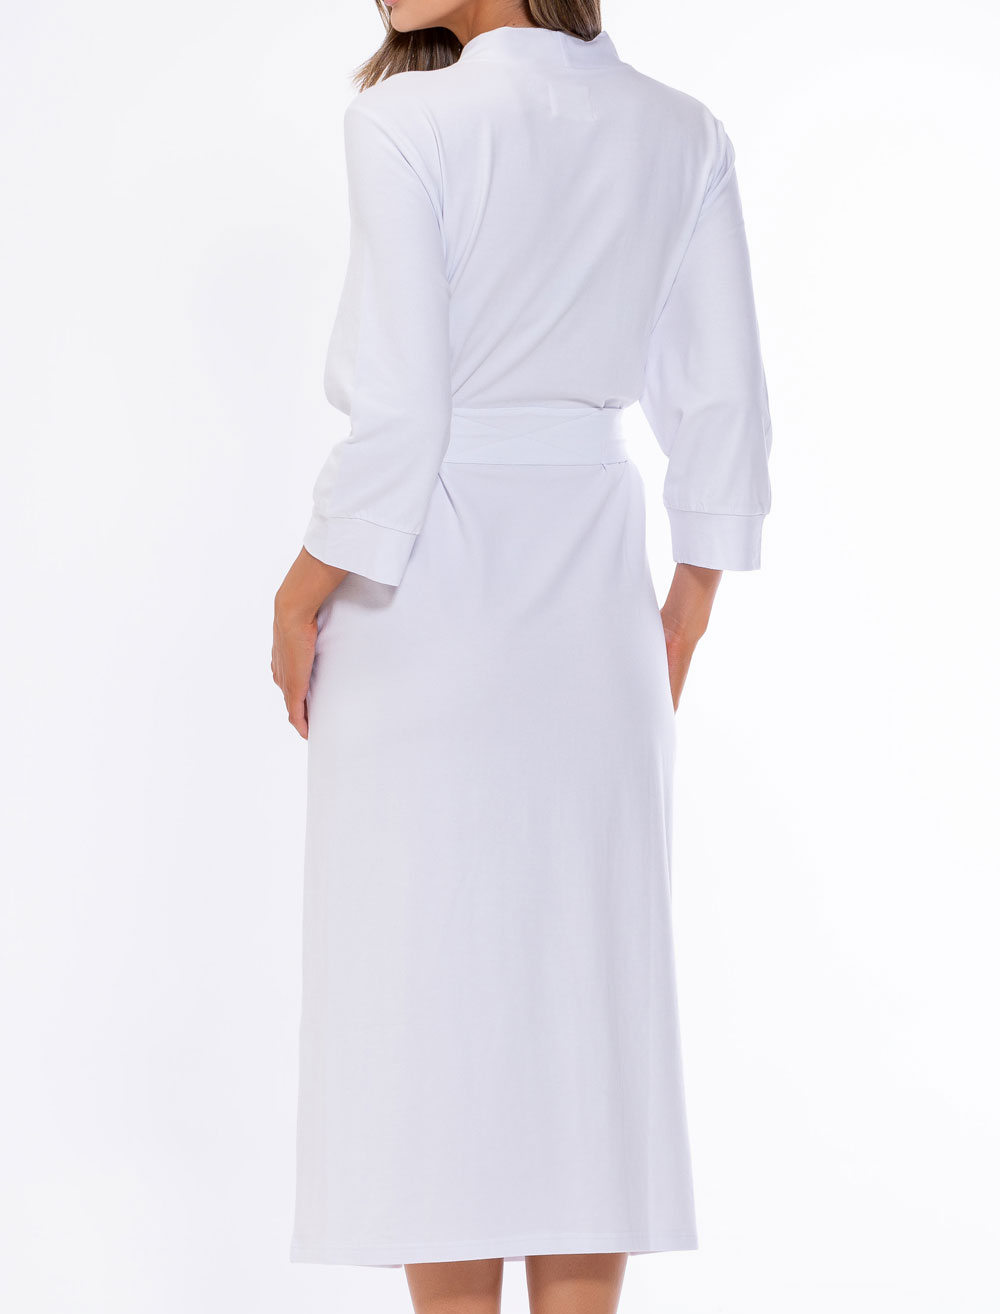 White Cotton Knit Kimono Robe